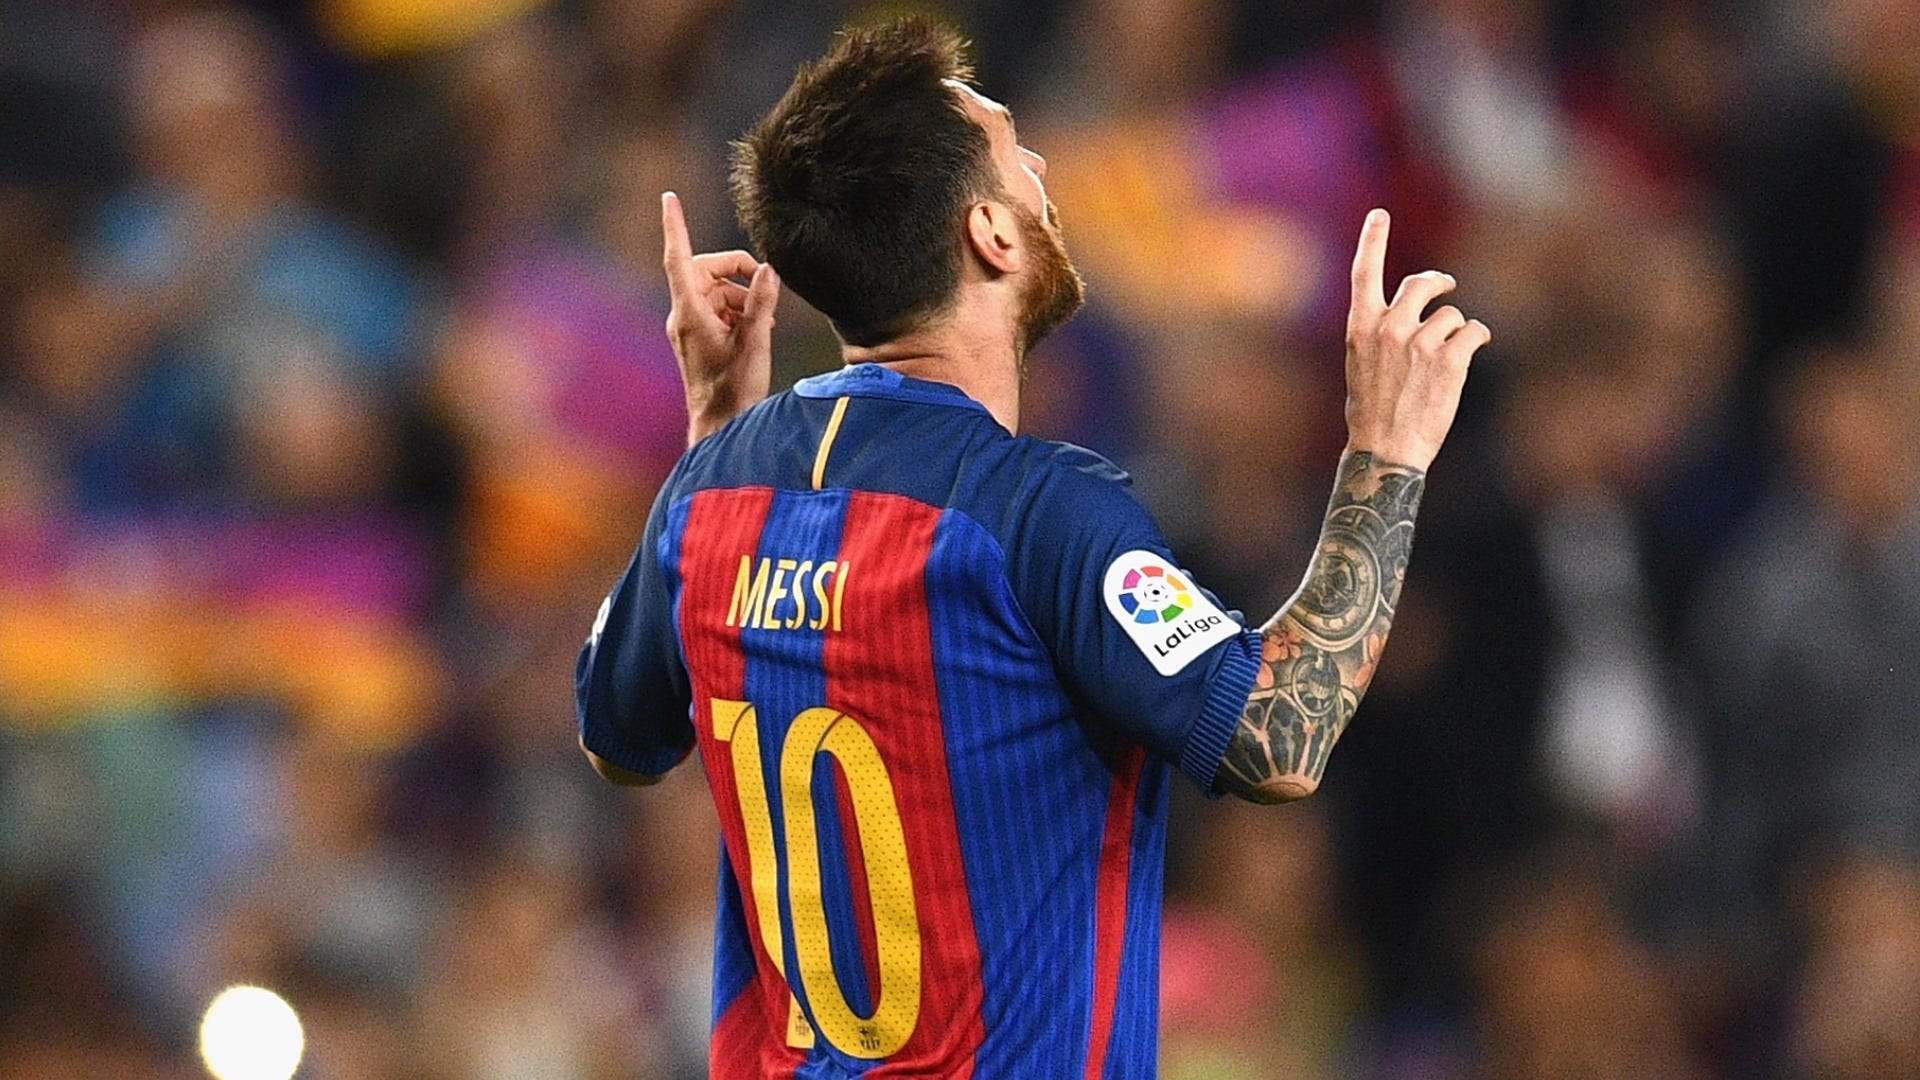 Vua Phá Lưới La Liga - Lionel Messi, với những pha bóng huyền thoại không ai sánh được. Hãy cùng xem những khoảnh khắc đỉnh cao của Messi trong màu áo đội bóng Barcelona, và bịt chặt vô hình vào những siêu phẩm bàn thắng anh ghi được!